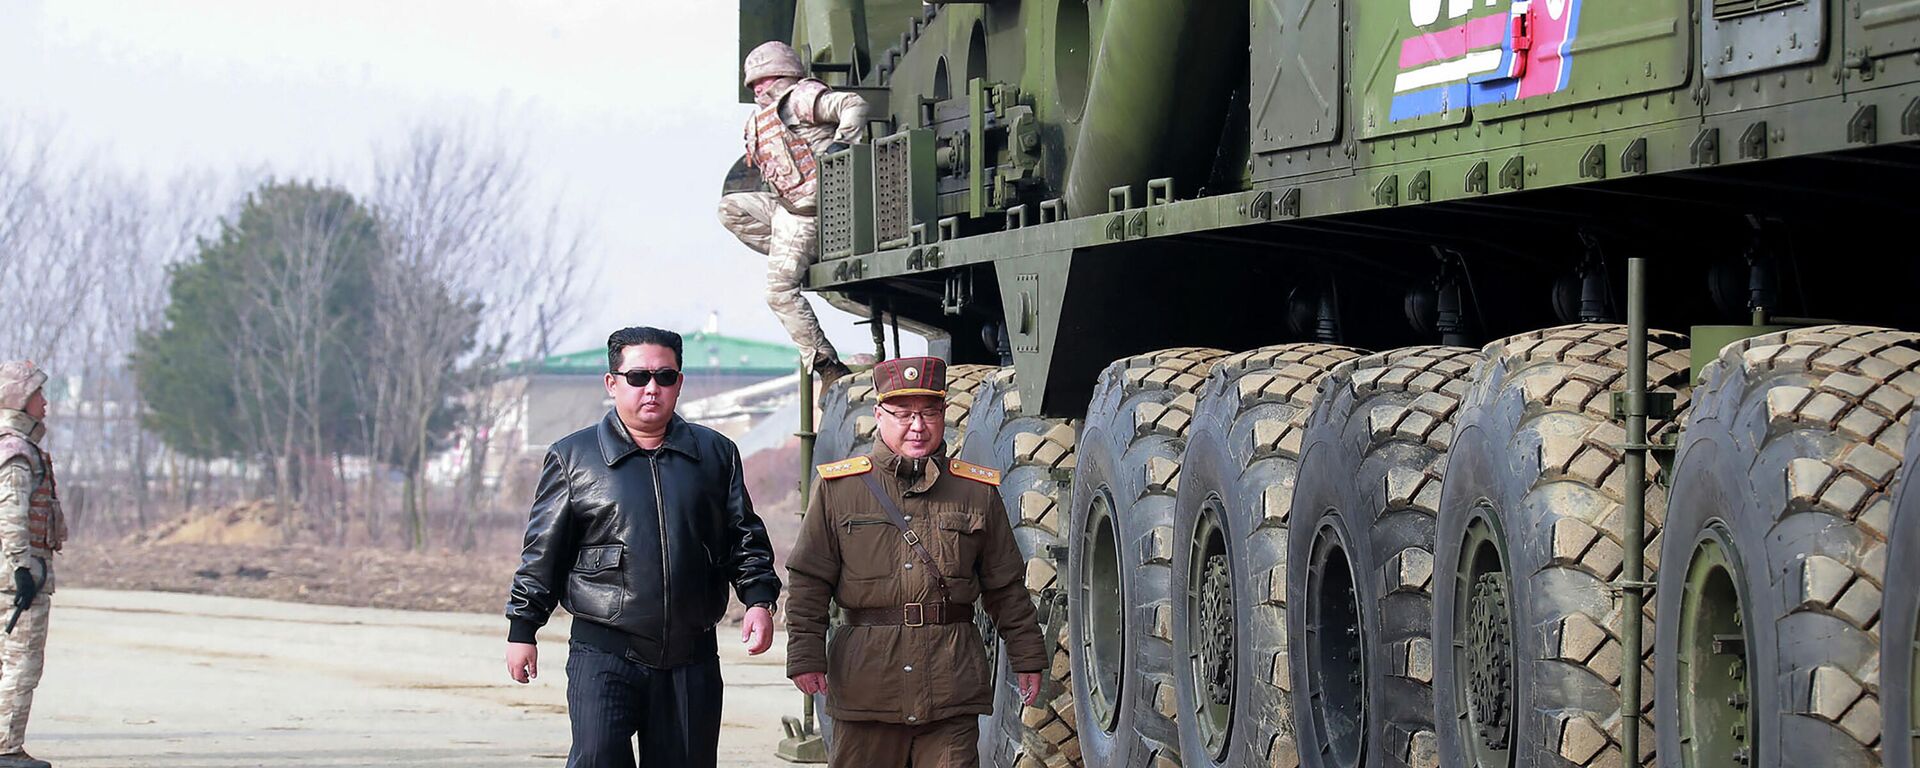 Түндүк Кореяда Хвасон-17 оор баллистикалык ракетасын сыноо учурунда - Sputnik Кыргызстан, 1920, 28.03.2022